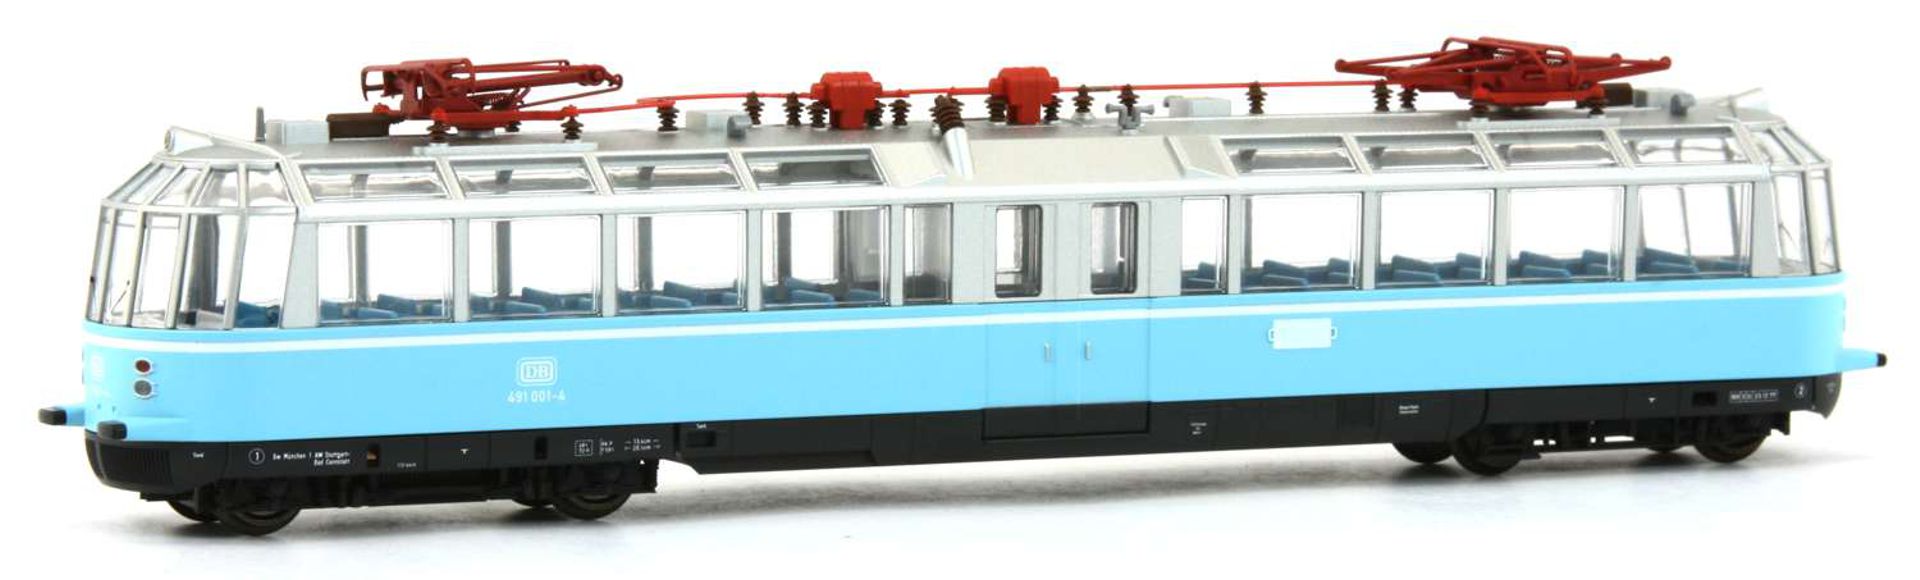 Kres 4912DS - Triebwagen 'Gläserner Zug' ET 91 01 001-4, DB, Ep.IV, olympiablau, DC-Sound